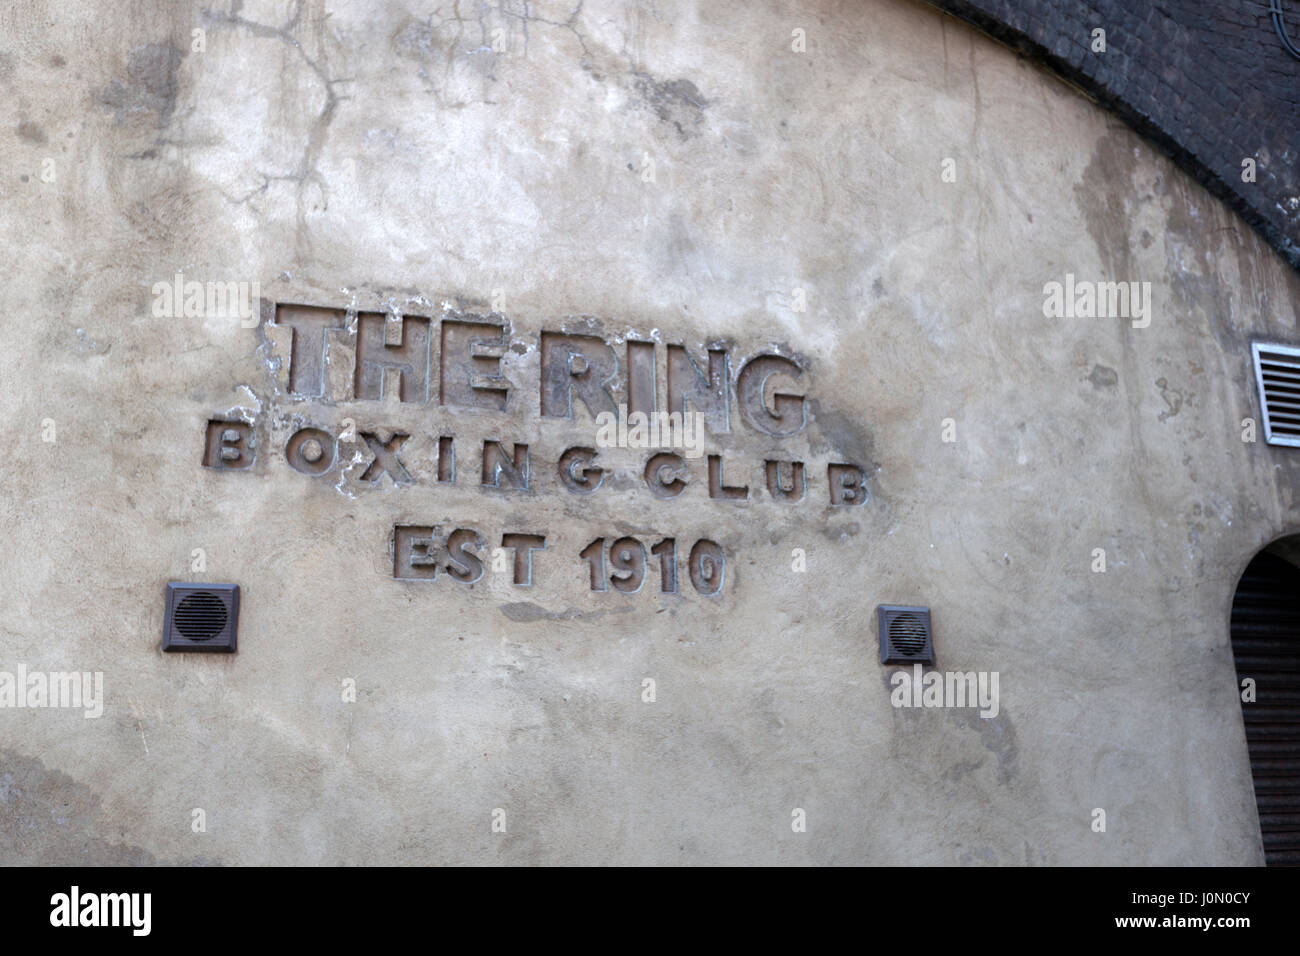 L'extérieur de l'anneau, Club de boxe Ewer Street, Southwark, London, UK. Banque D'Images